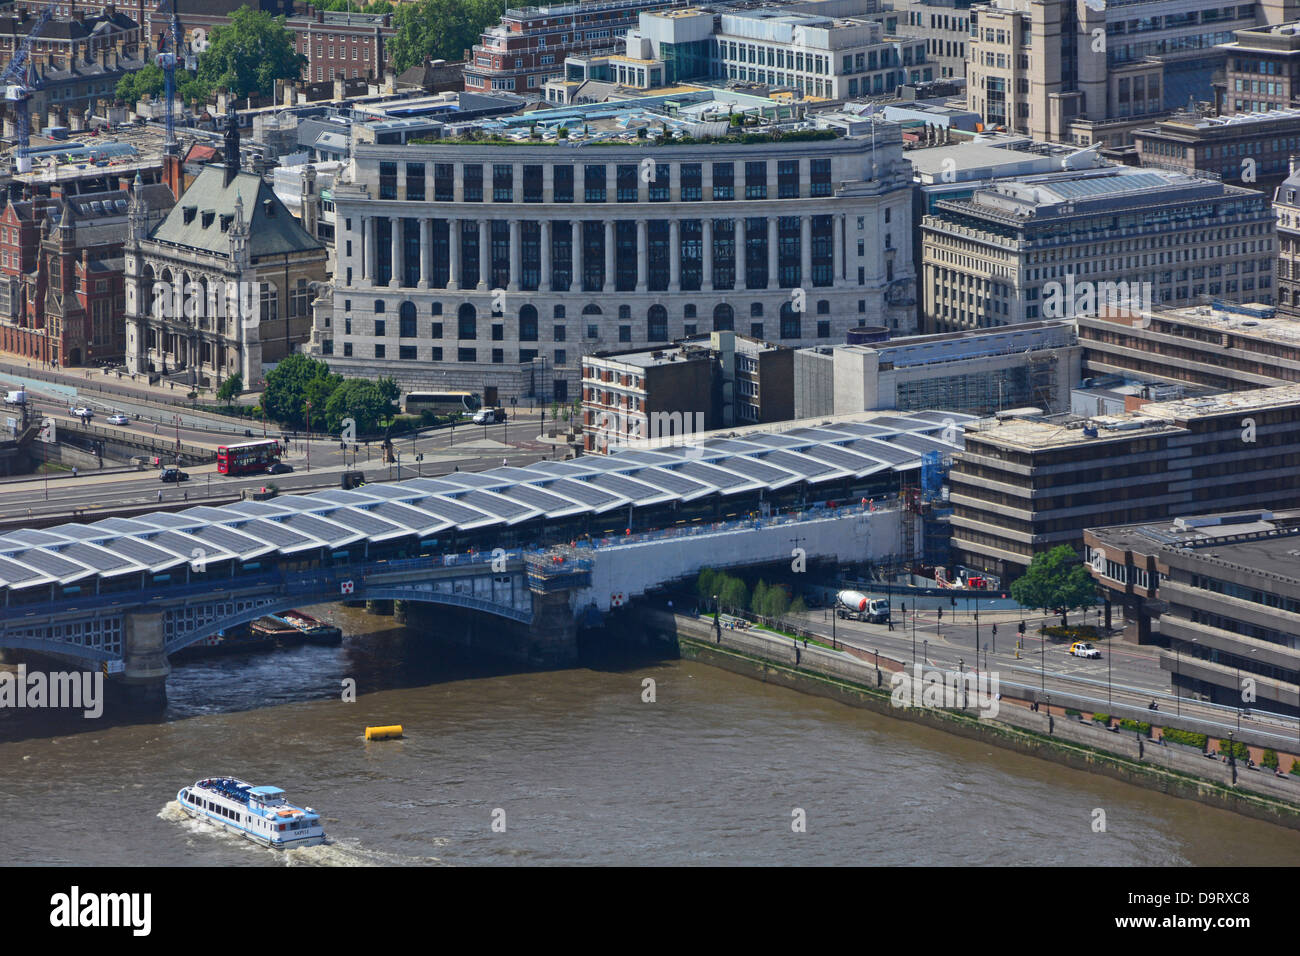 Panneau solaire photovoltaïque toit Blackfriars gare plates-formes sur le pont de la Tamise et Unilever House Building au-delà de la ville de Londres Angleterre Royaume-Uni Banque D'Images